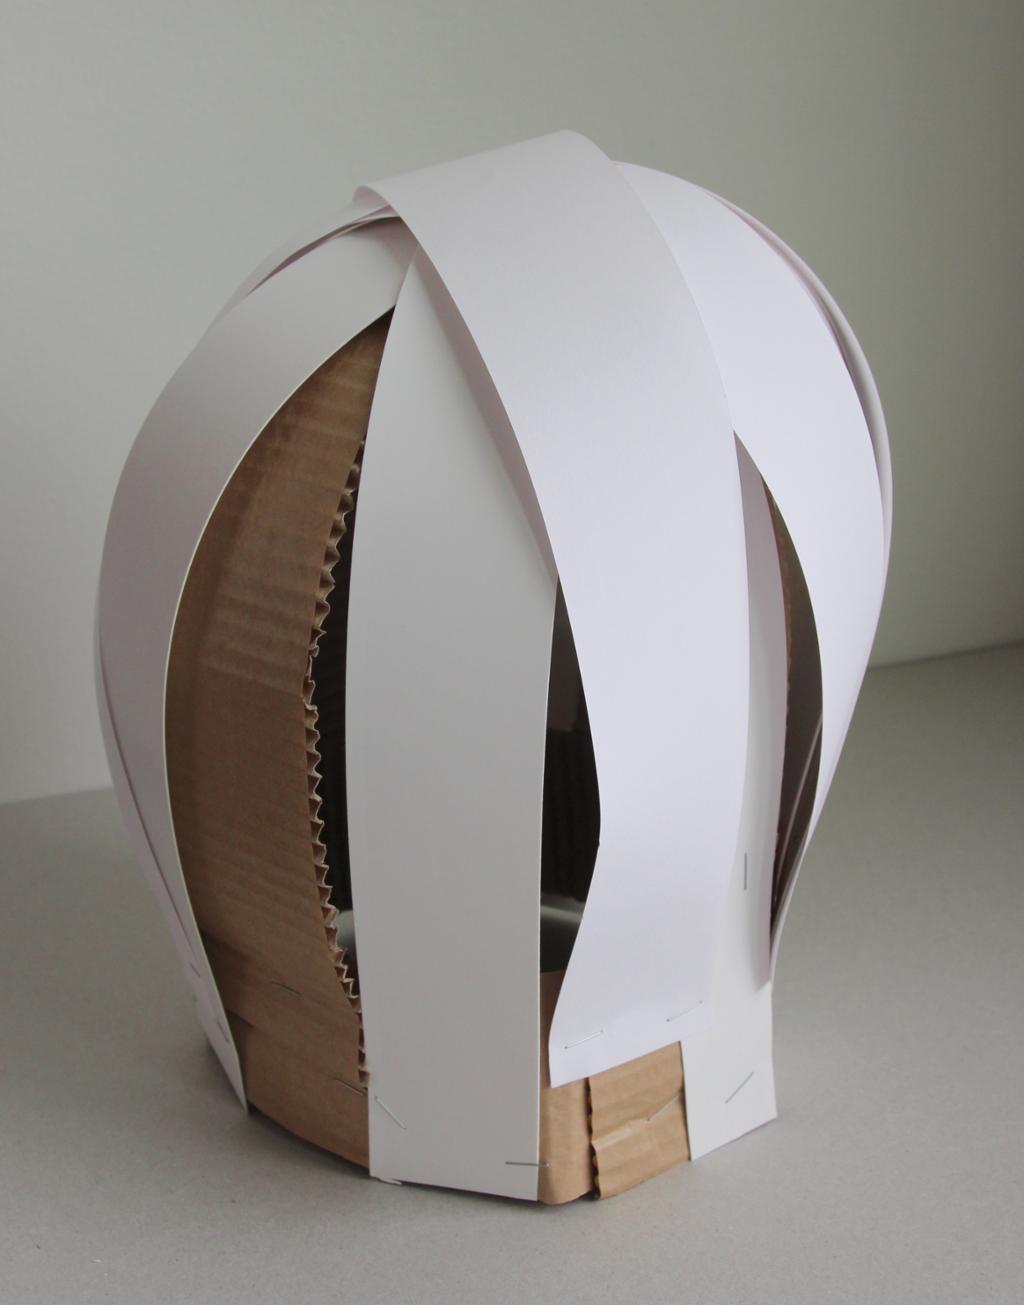 Formen til en parykk bygget i papp og papir. Foto.